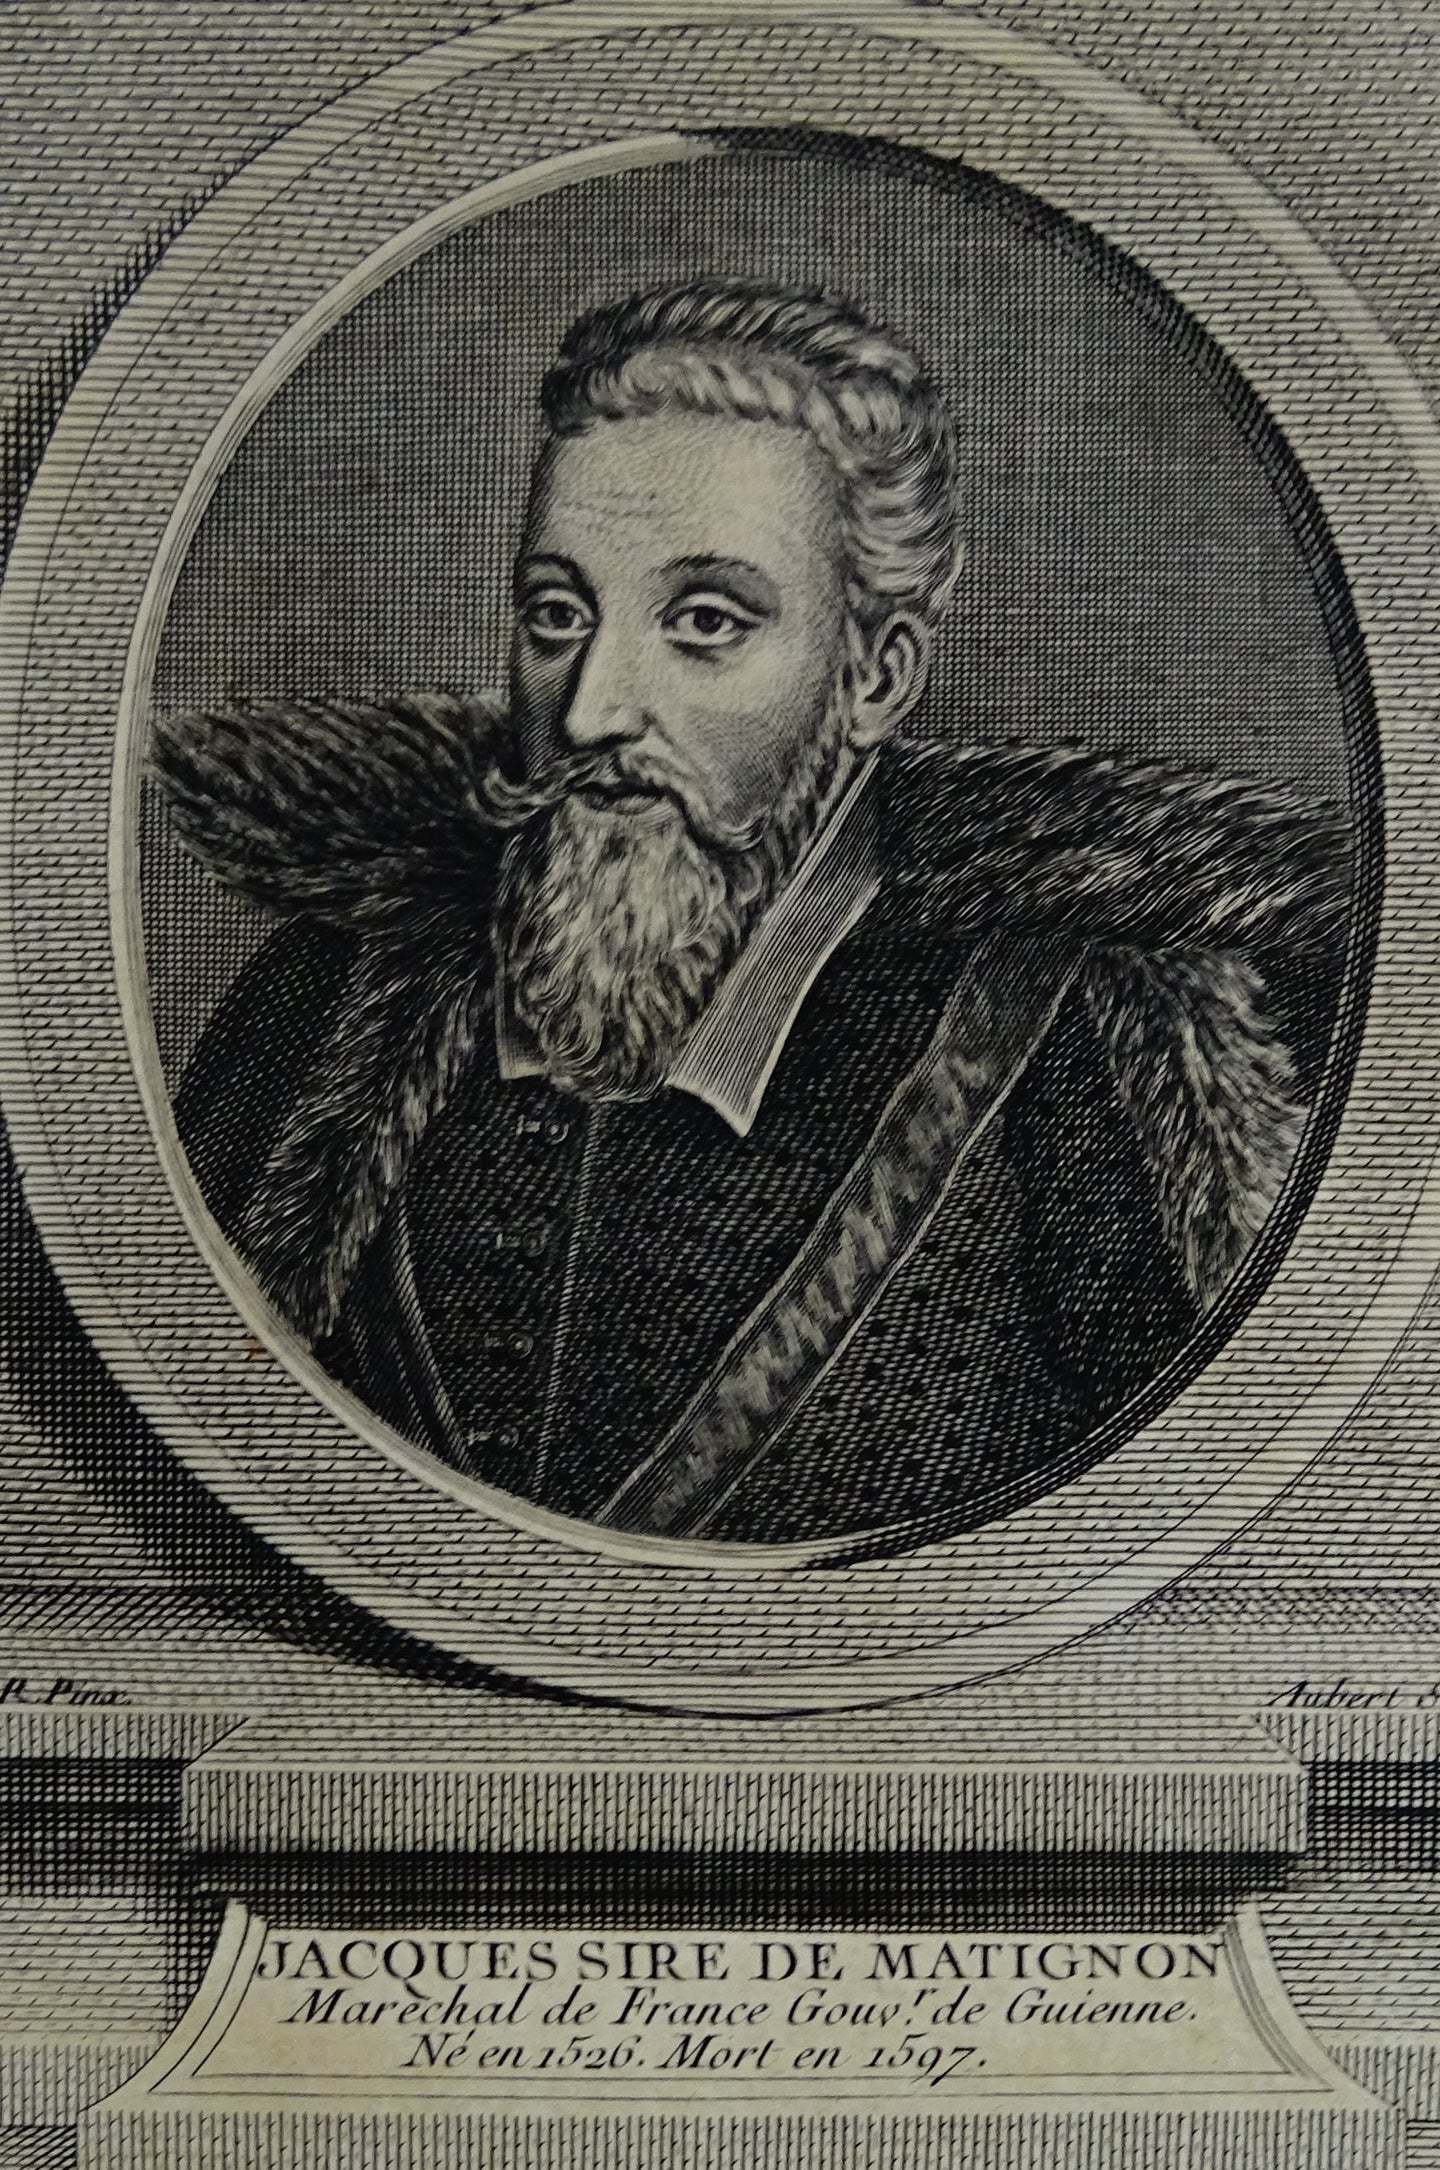 Jacques Sire de Matignon